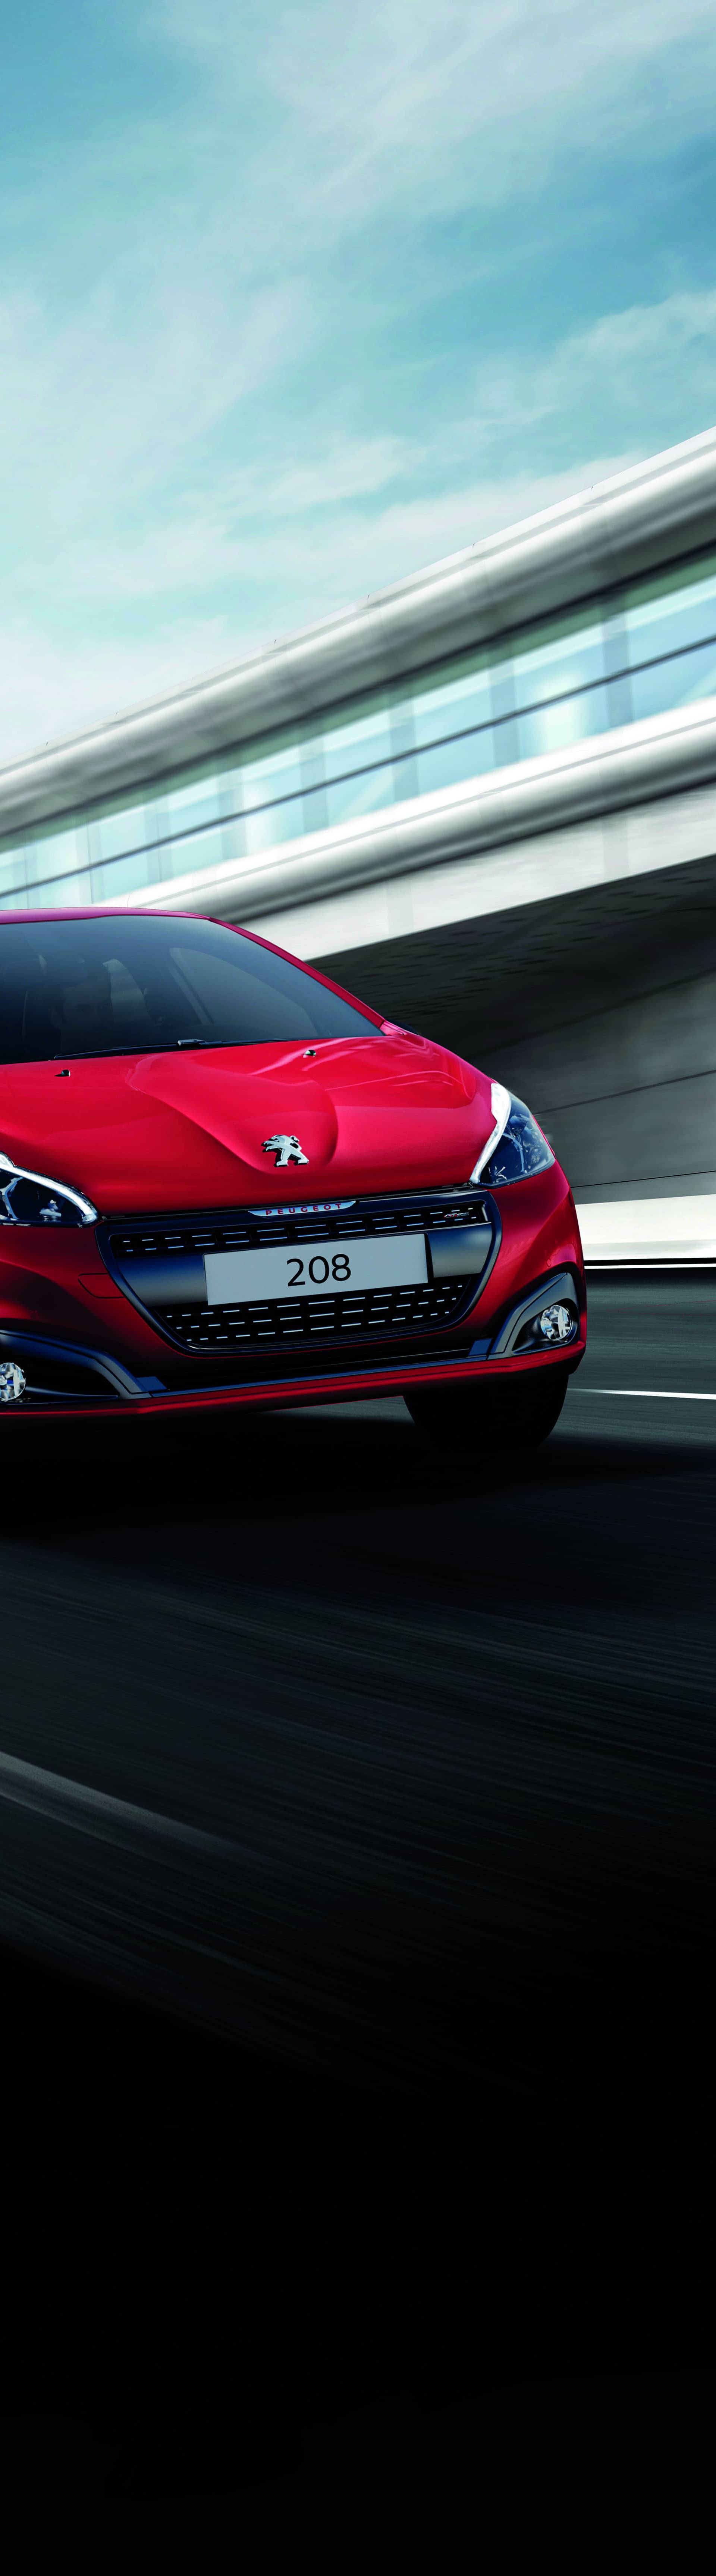 Sakupljaj kupone u 24sata i uz malo sreće osvoji Peugeot 208